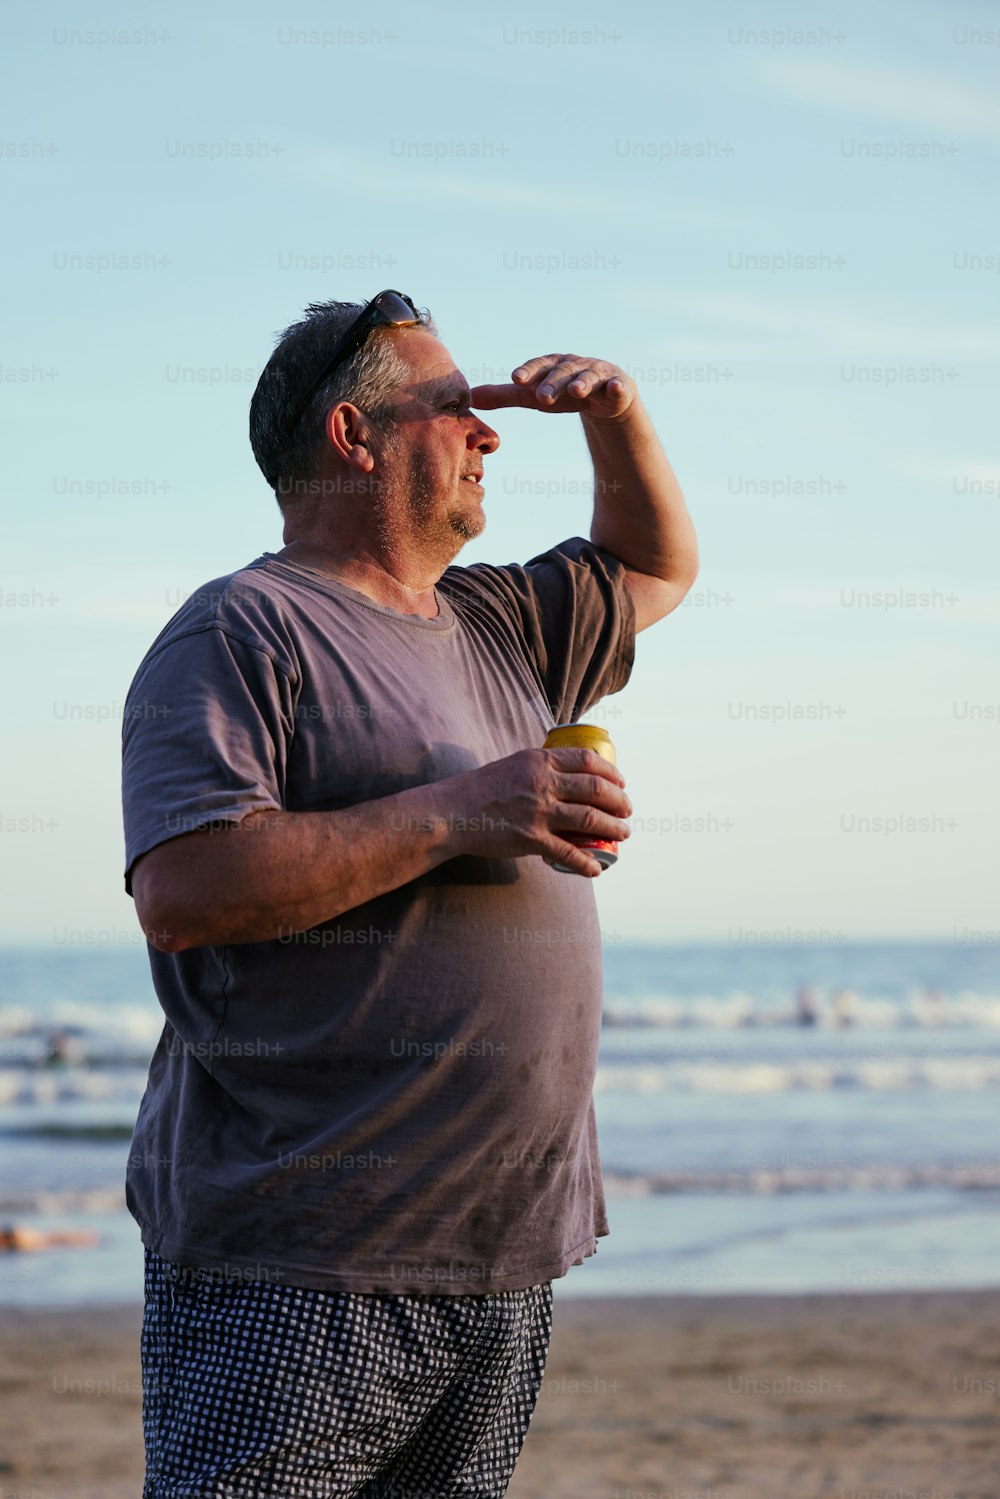 Ein Mann, der am Strand steht und einen gelben Frisbee hält